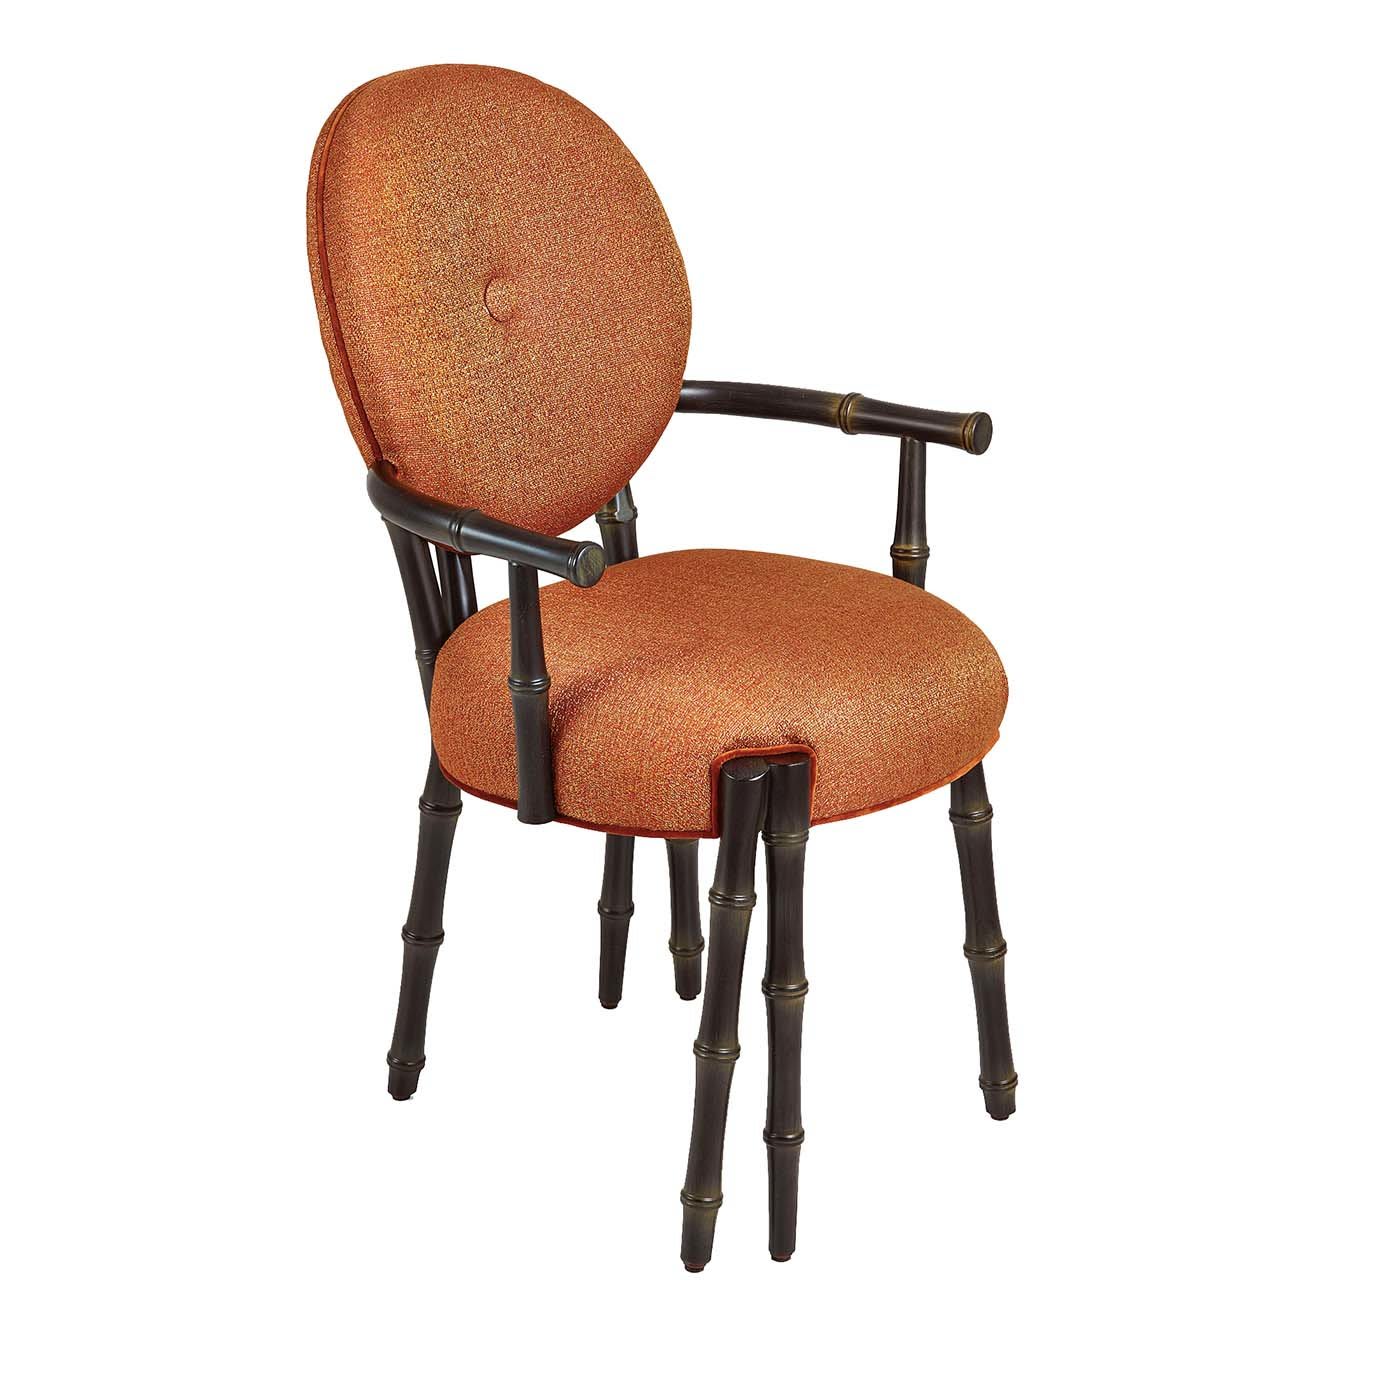 Siam Orange Chair - Sicis